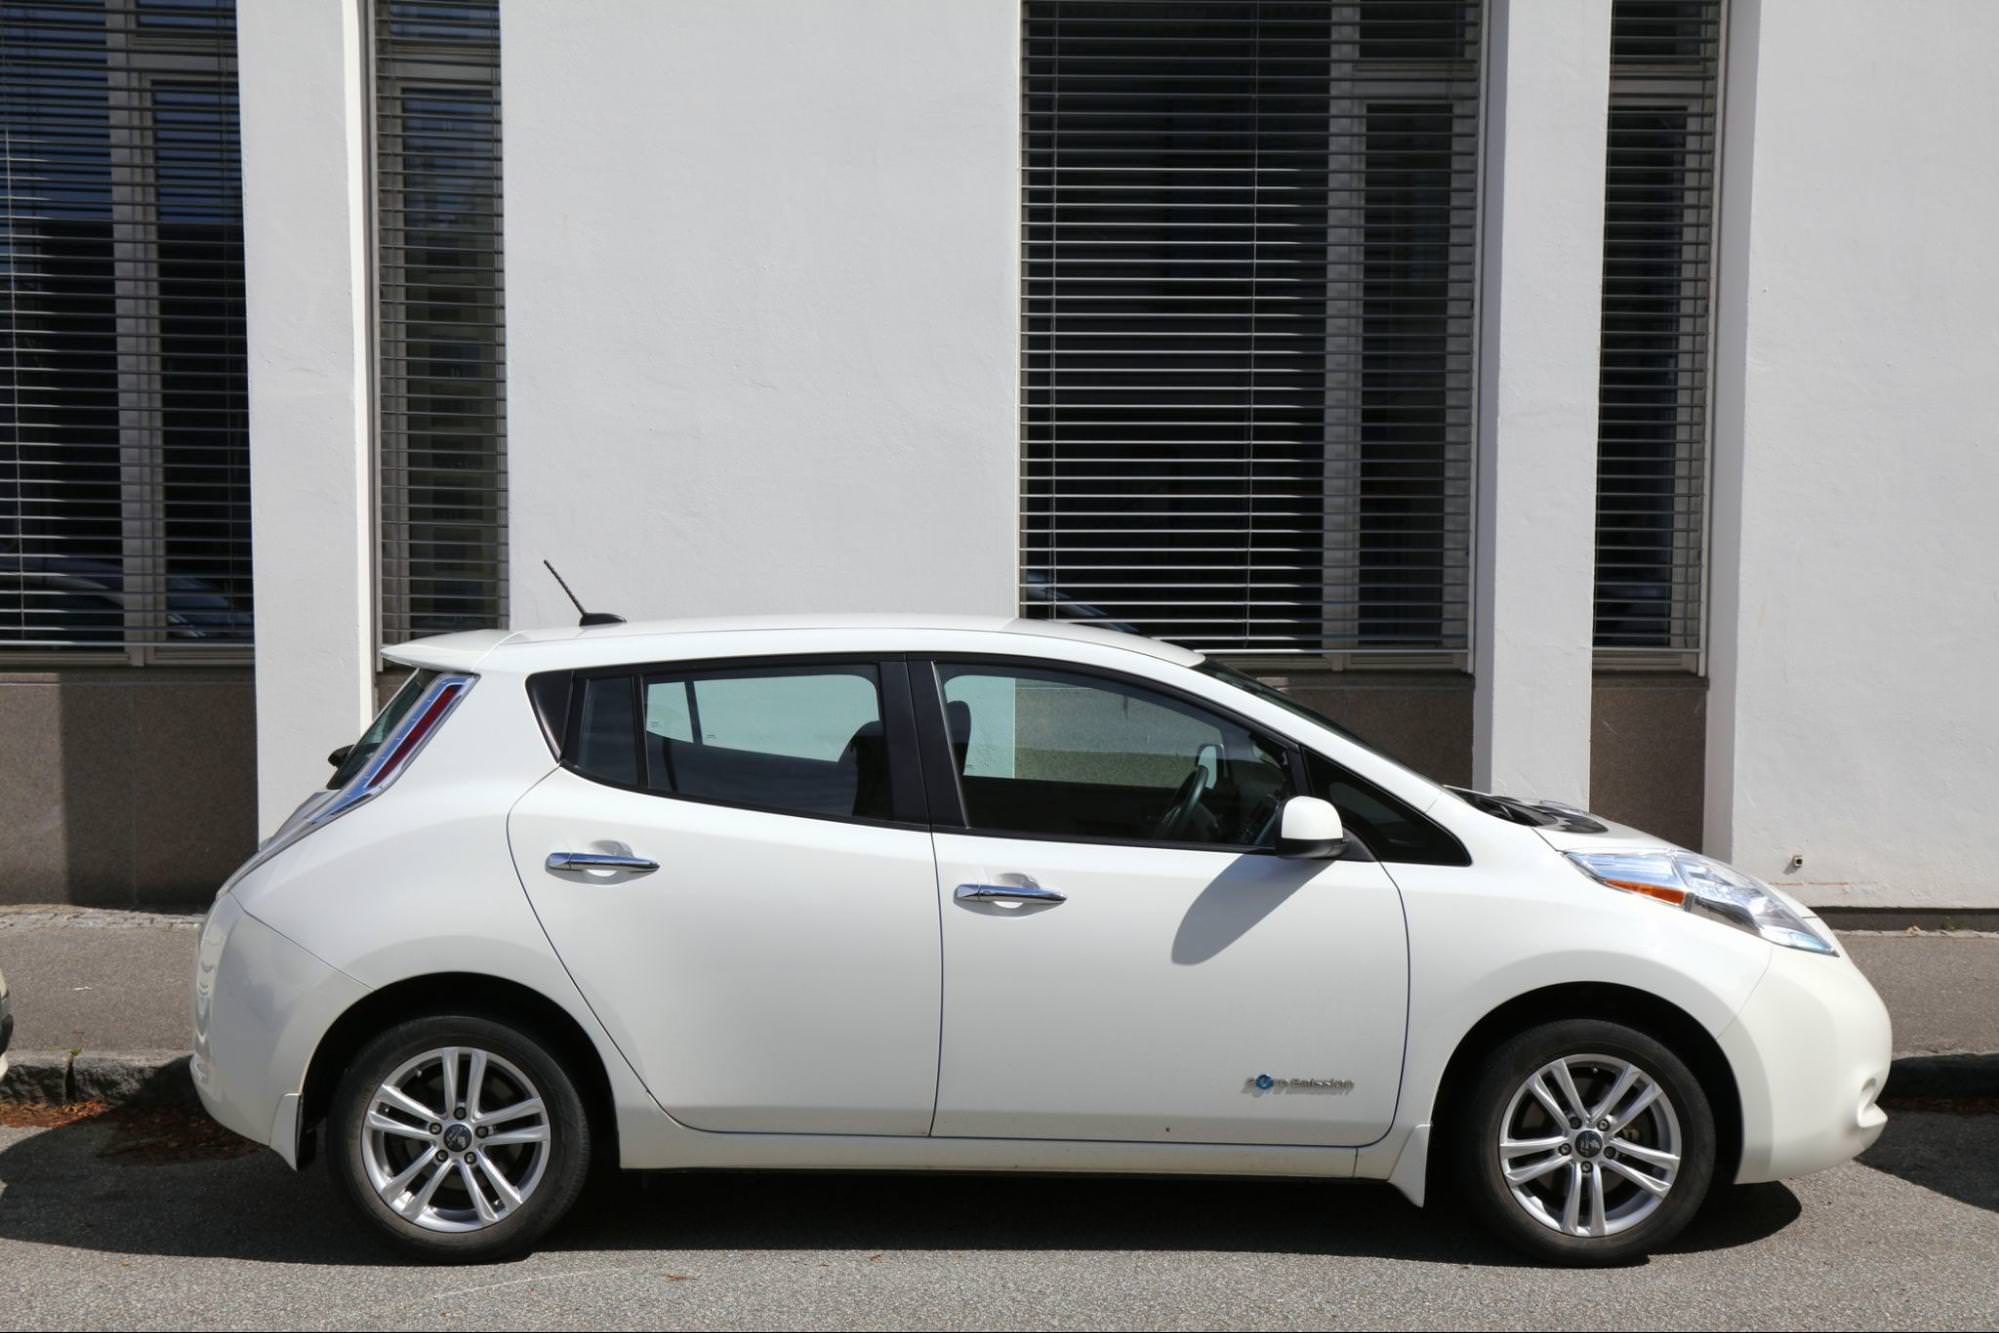 Nissan Leaf, ein emissionsfreier Elektro-Kompaktwagen, der auf der Straße geparkt ist